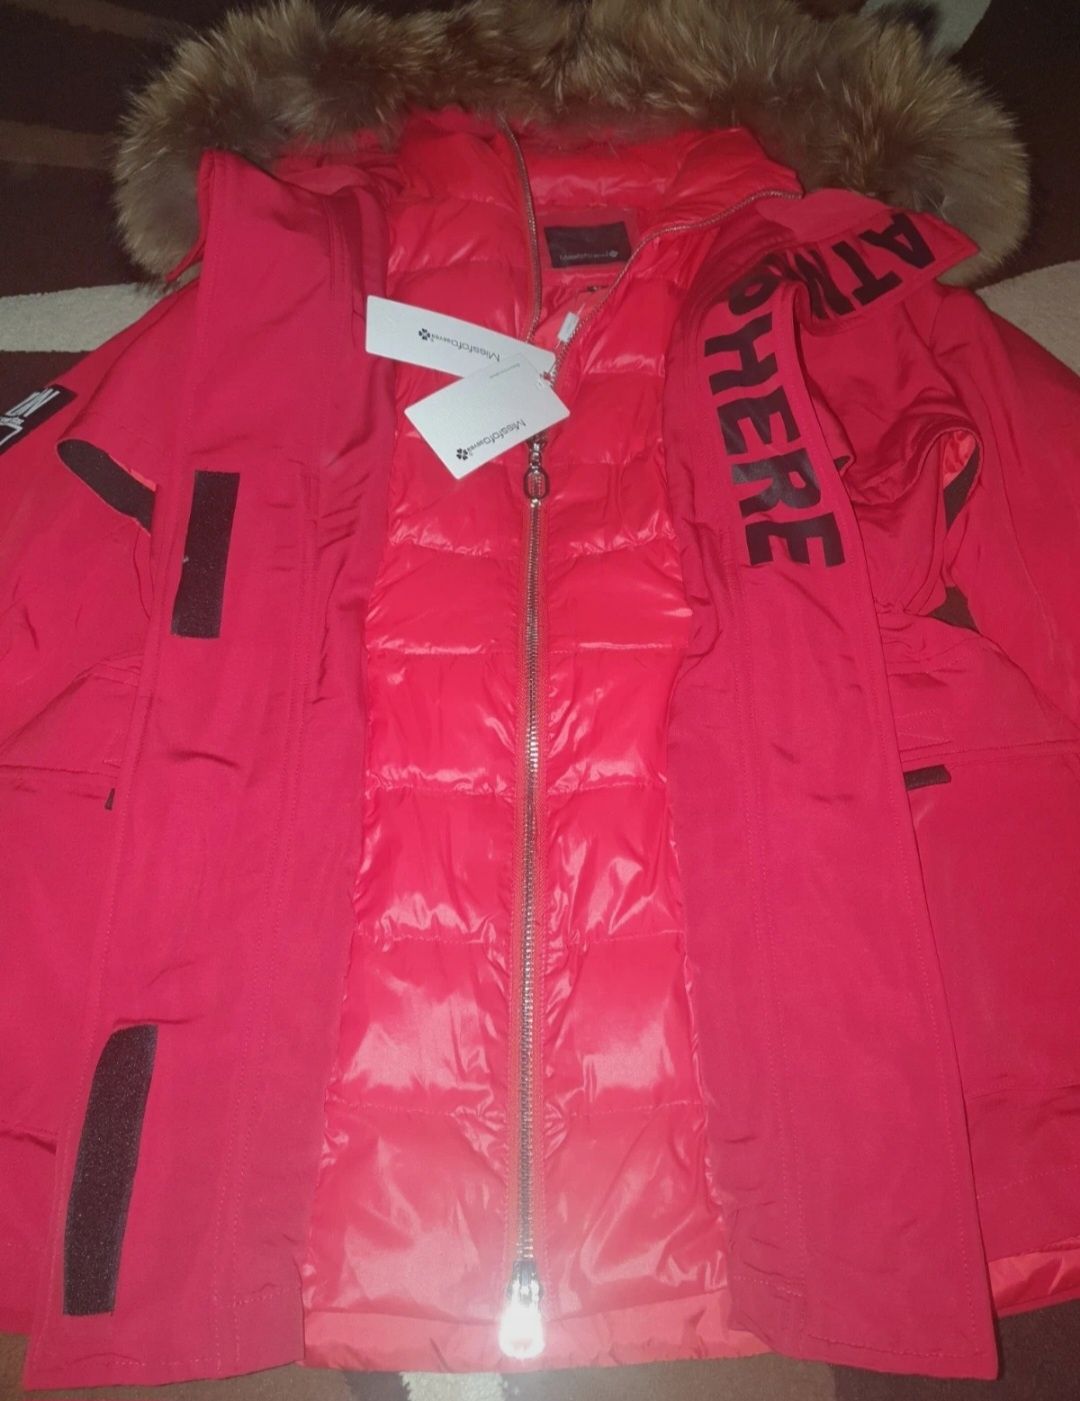 Czerwona zimowa kurtka z naturalnym jenotem Miss fofo rozmiar 42 XL